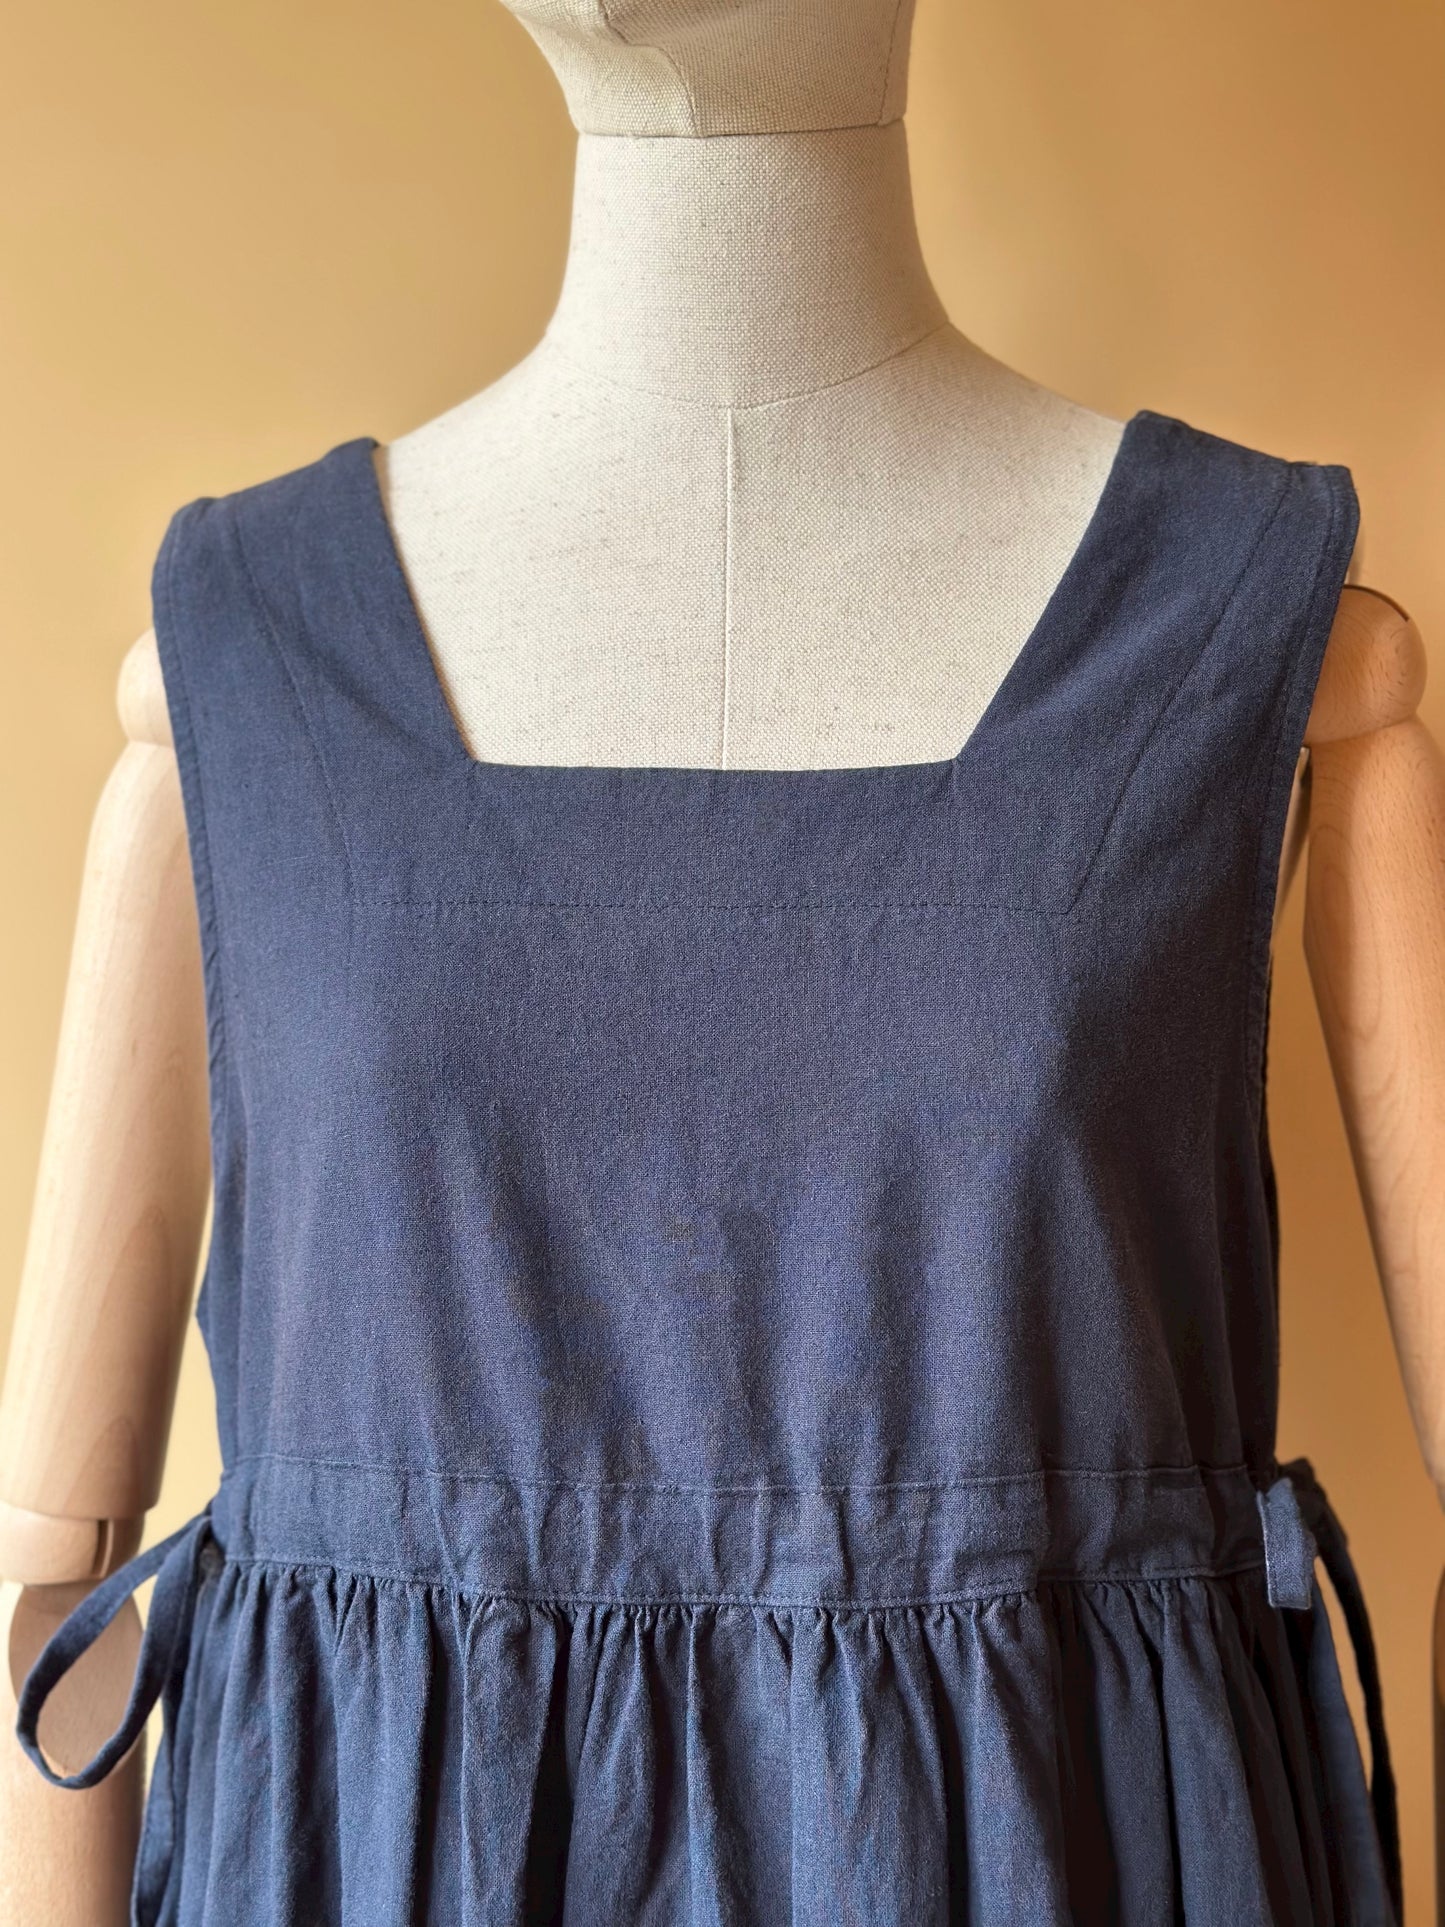 Sleeveless Navy Blue Cotton & Linen Dress